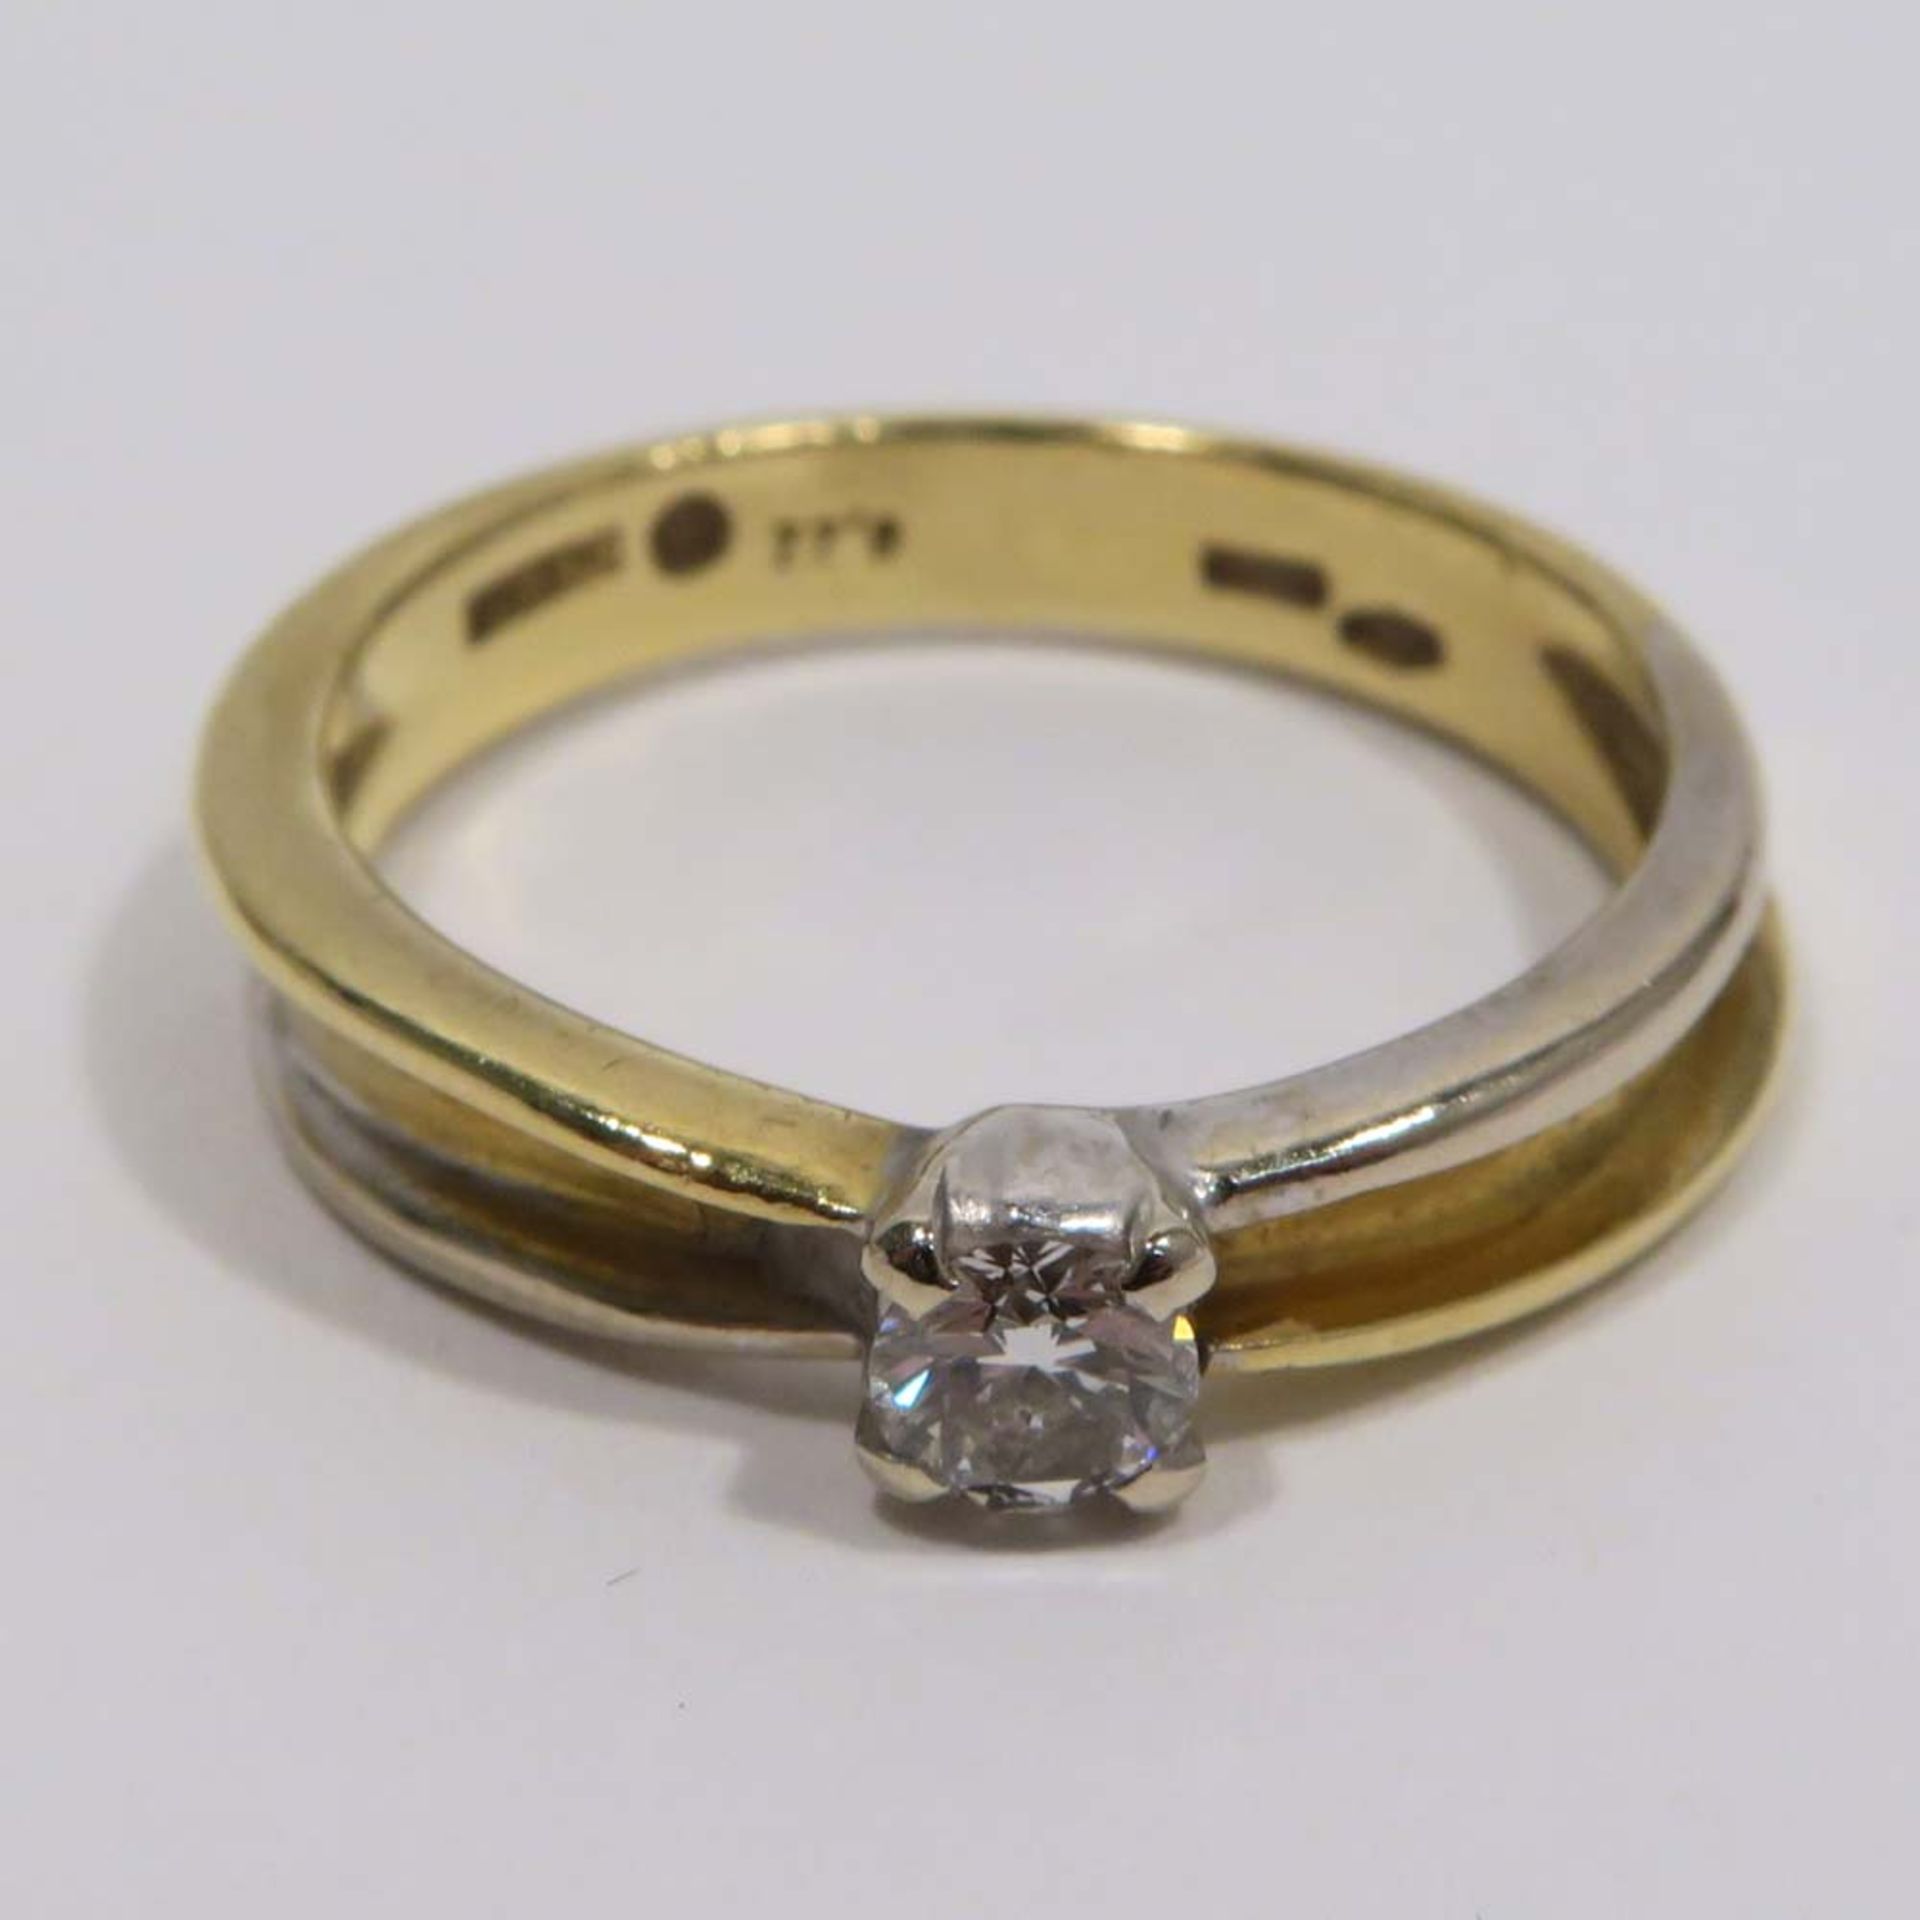 Solitärring18 K GG/WG, Marken (Damian, u.a.). Mit einem Diamant, 0,2 ct. Ringgröße 54. 4,2 g.